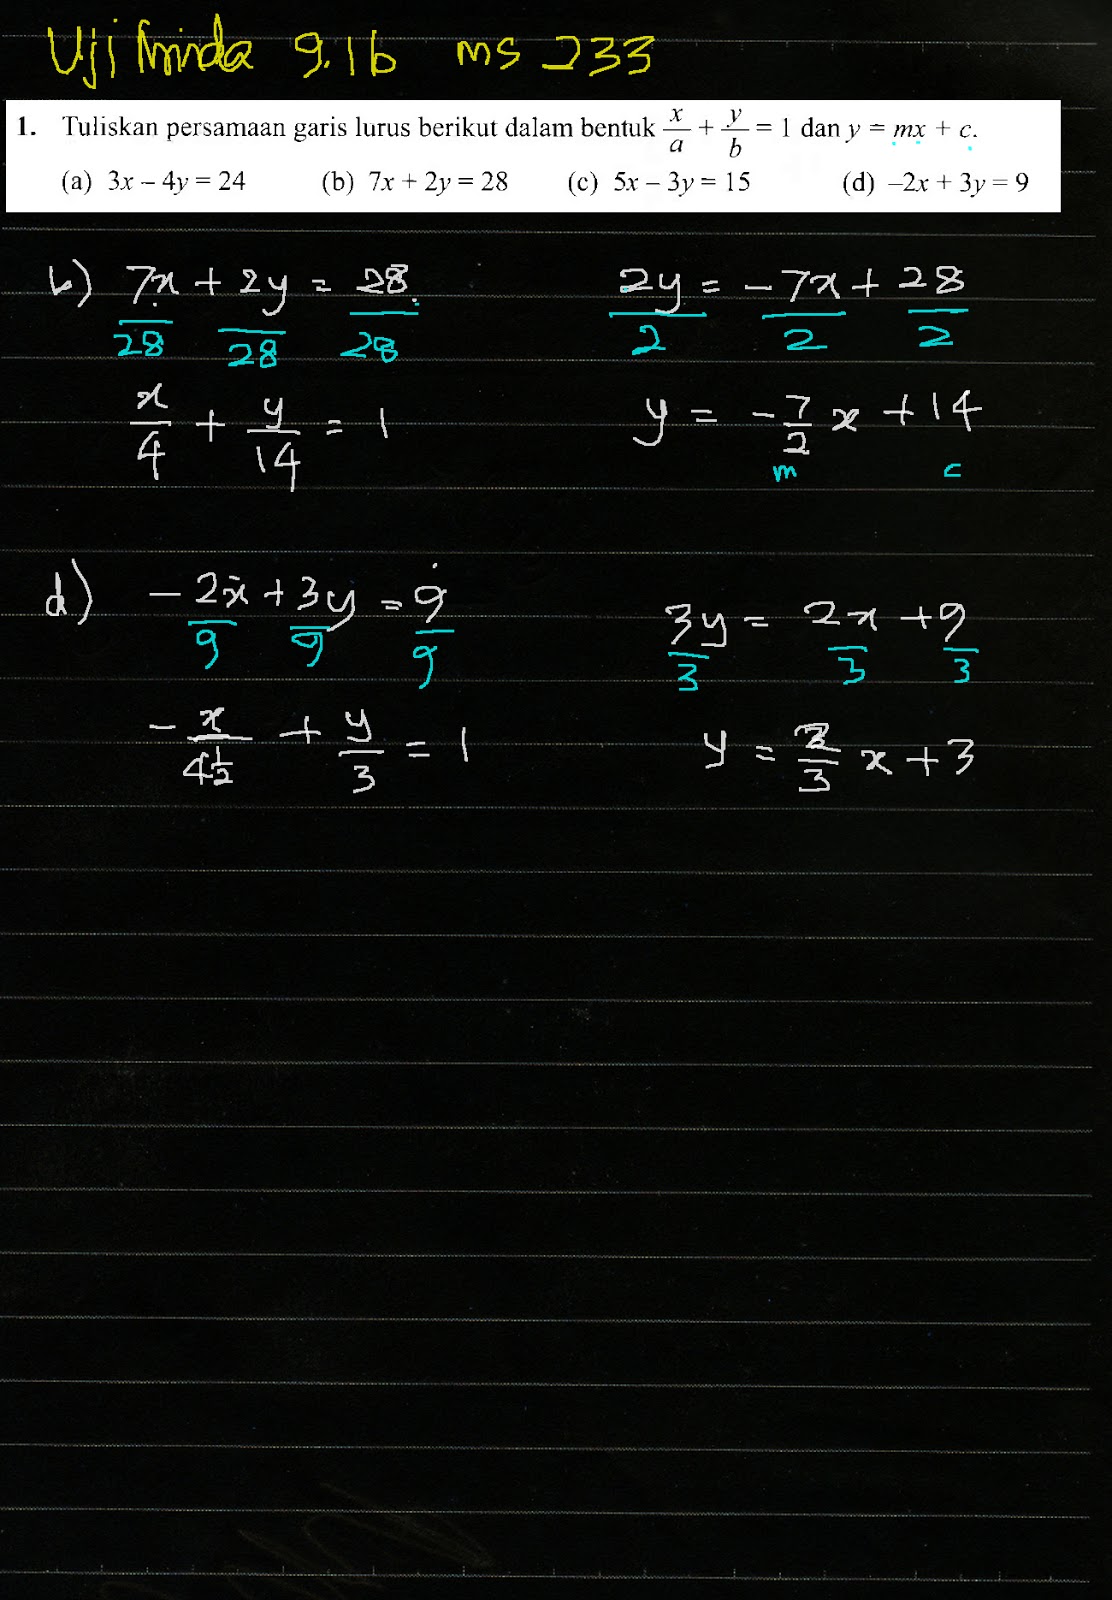 Cikgu Azman Bab 9 Garis Lurus Tingkatan 3 Matematik Uji Minda 9 1b